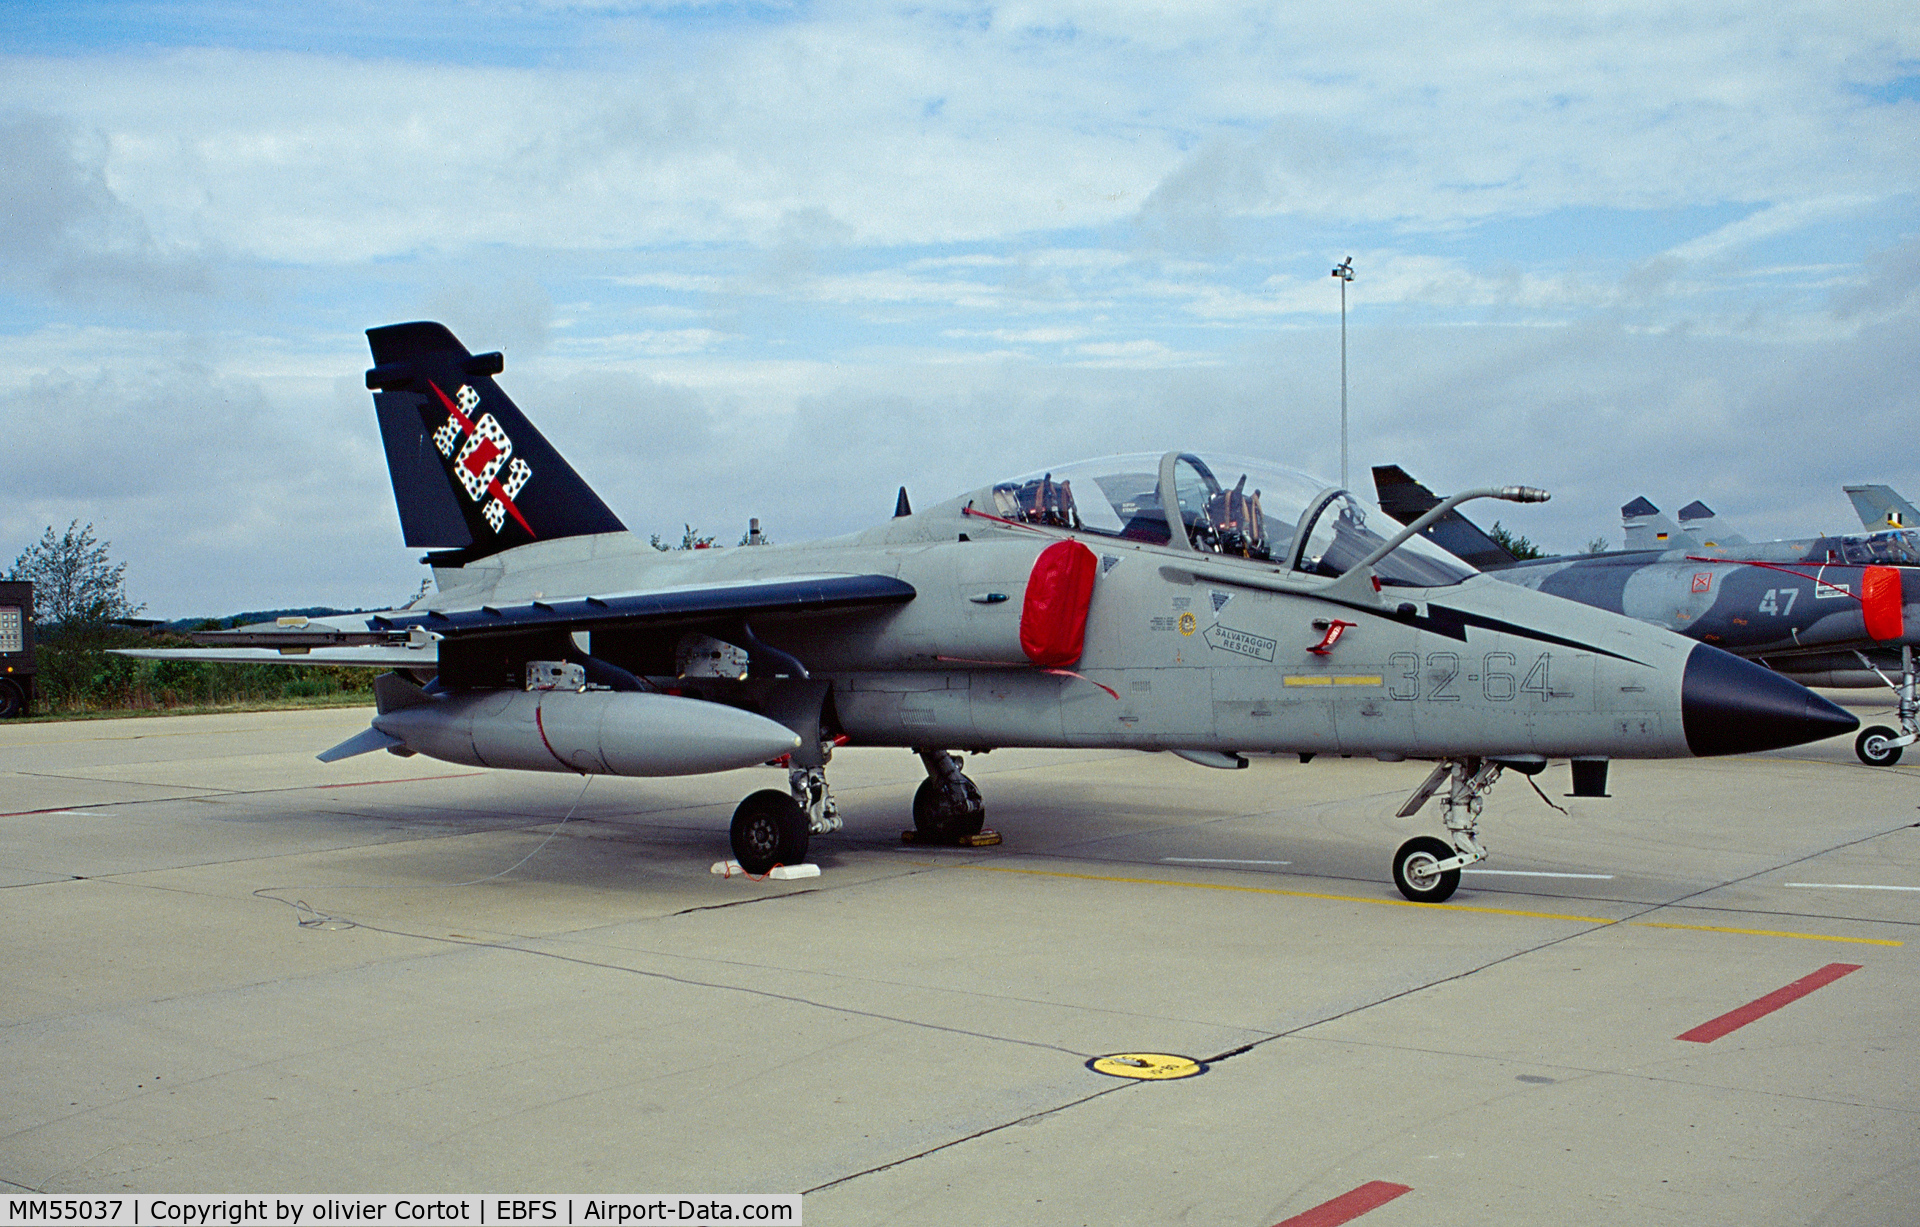 MM55037, AMX International AMX-T C/N IT012, Florennes airshow 2001